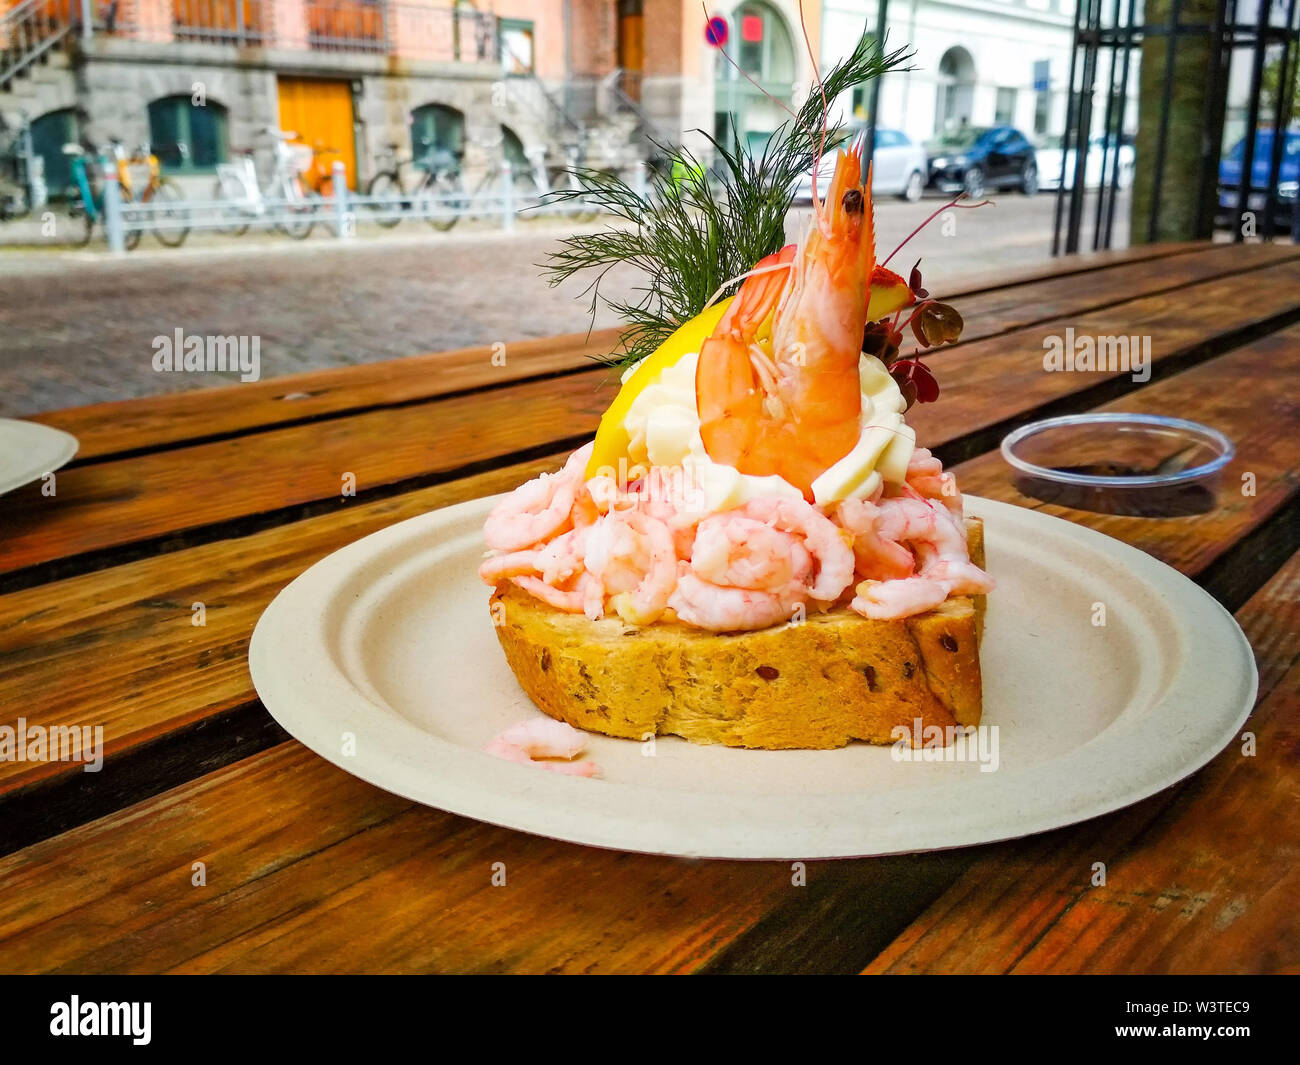 Sandwich freschi con gamberi e limone in stile danese, si tratta di un pasto delizioso. La colazione è servita su una piastra su un tavolo di legno a Copenaghen. Foto Stock